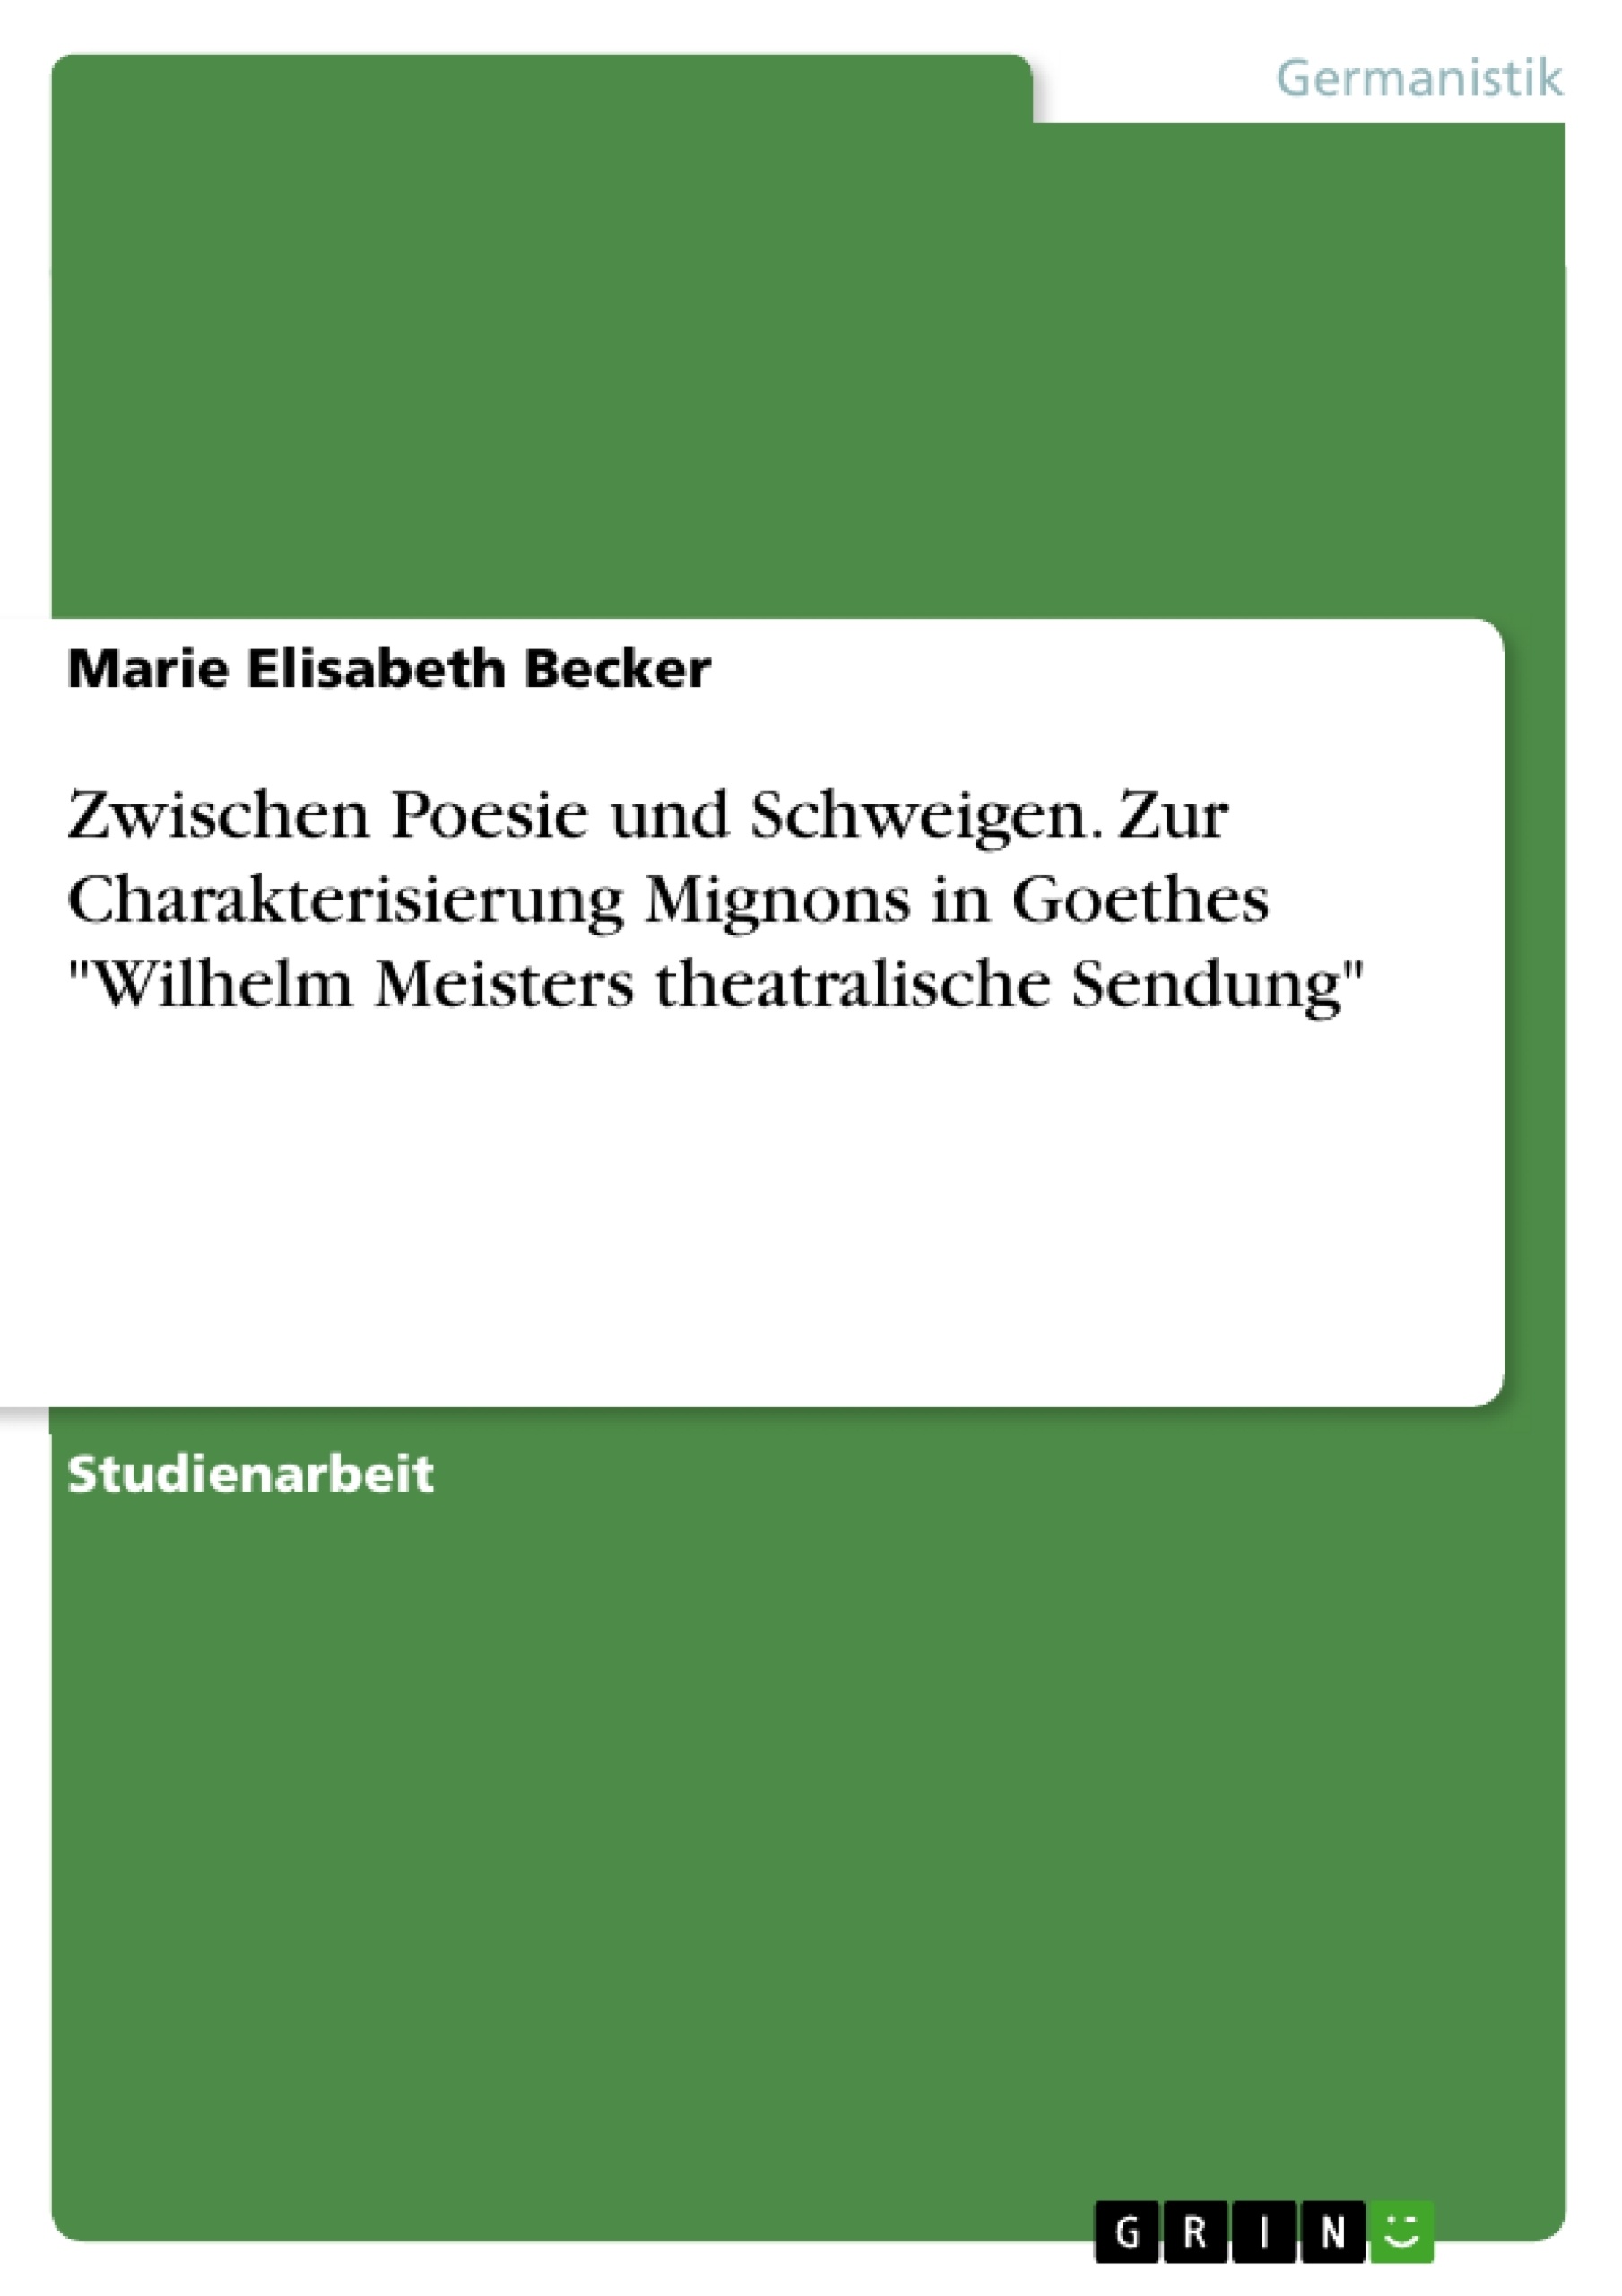 Title: Zwischen Poesie und Schweigen. Zur Charakterisierung Mignons in Goethes "Wilhelm Meisters theatralische Sendung"